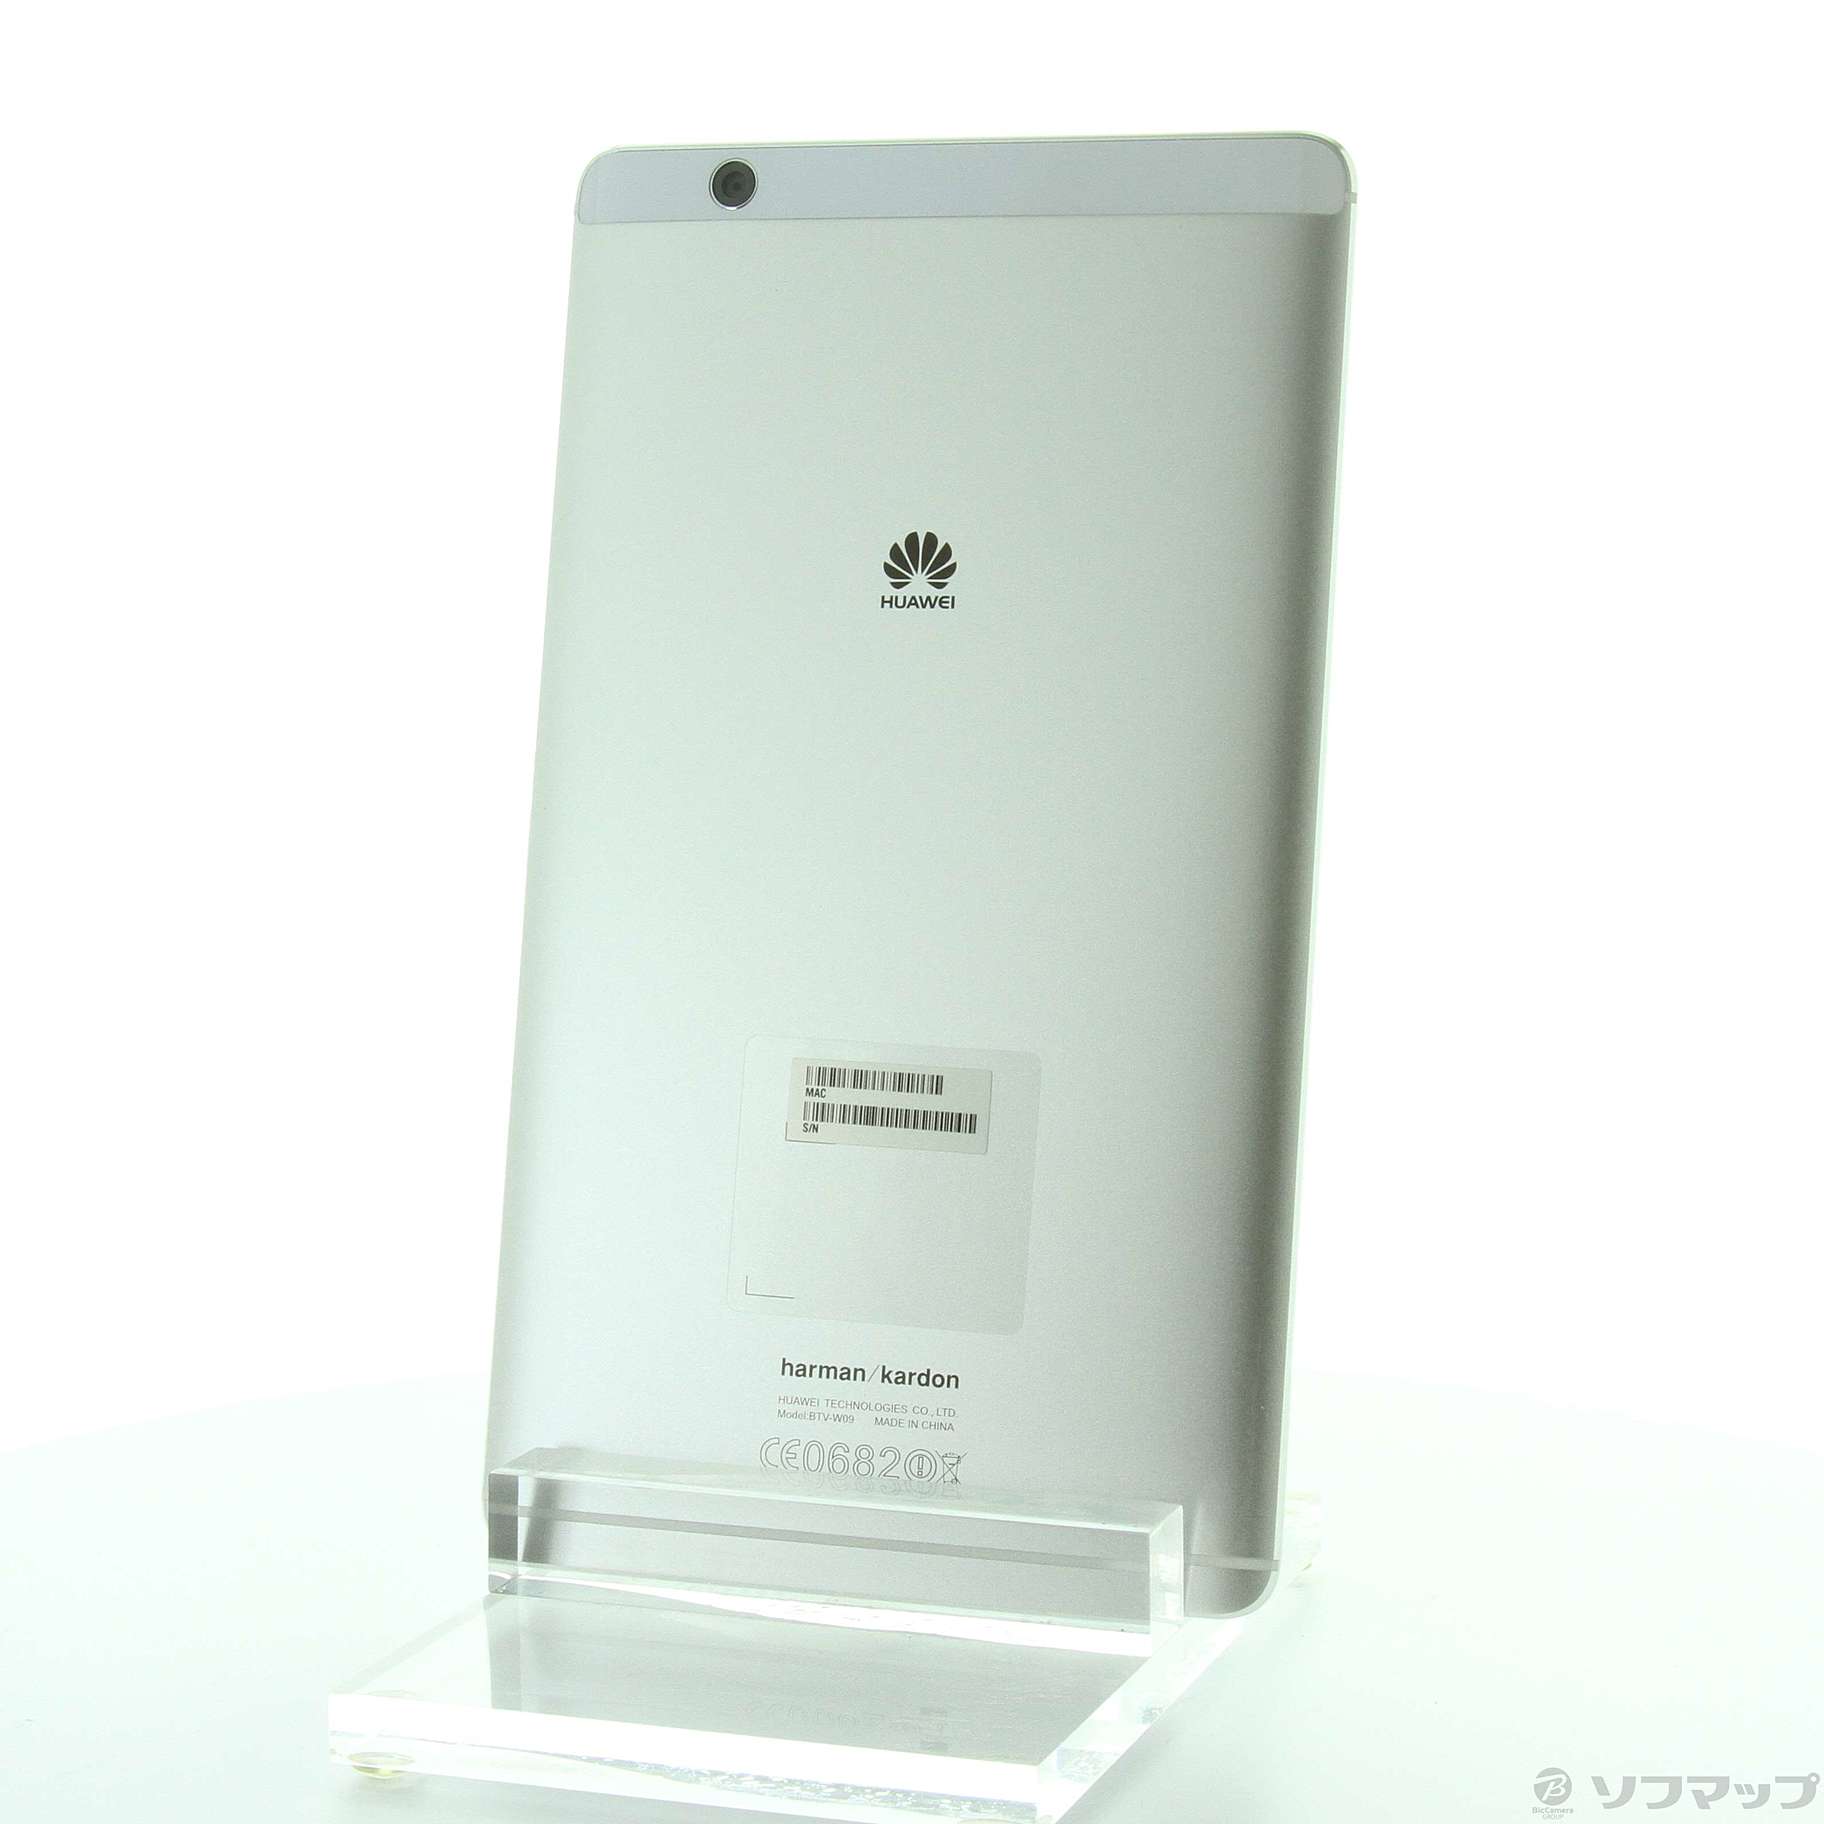 HUAWEI MediaPad M3 8.0 32GBモデル Silver WiFi-